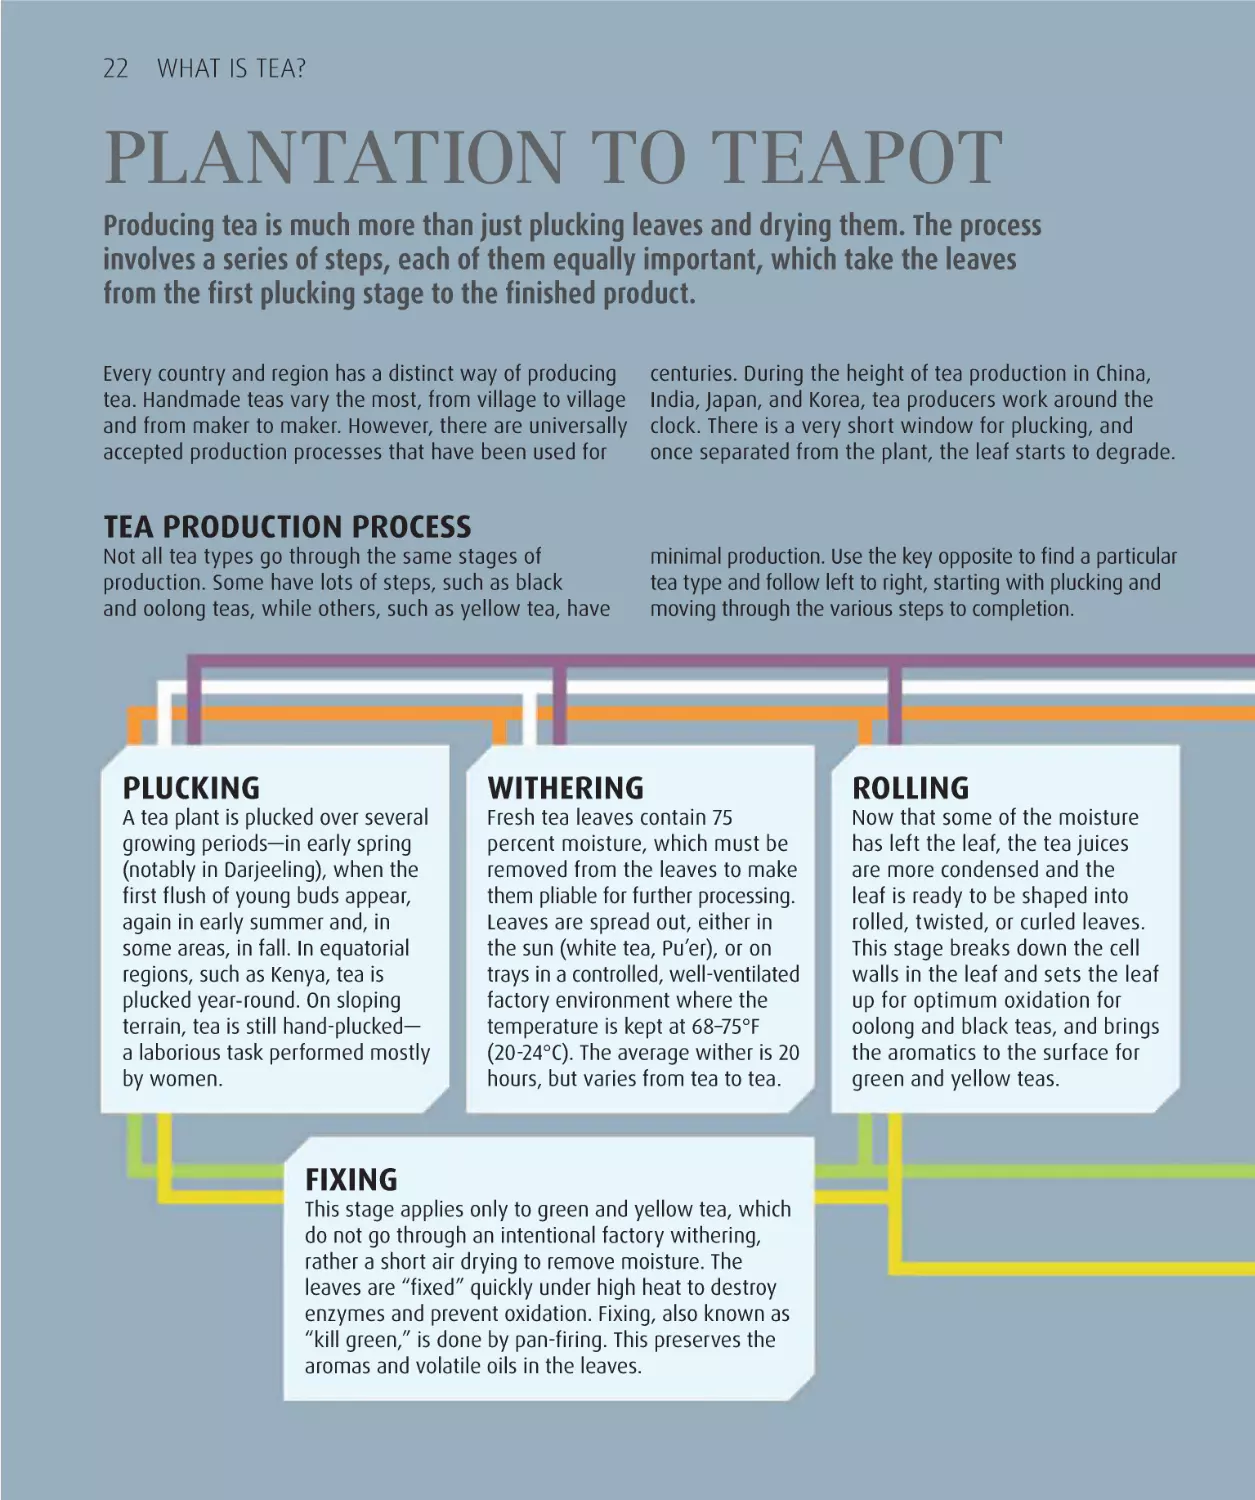 Plantation to teapot 22